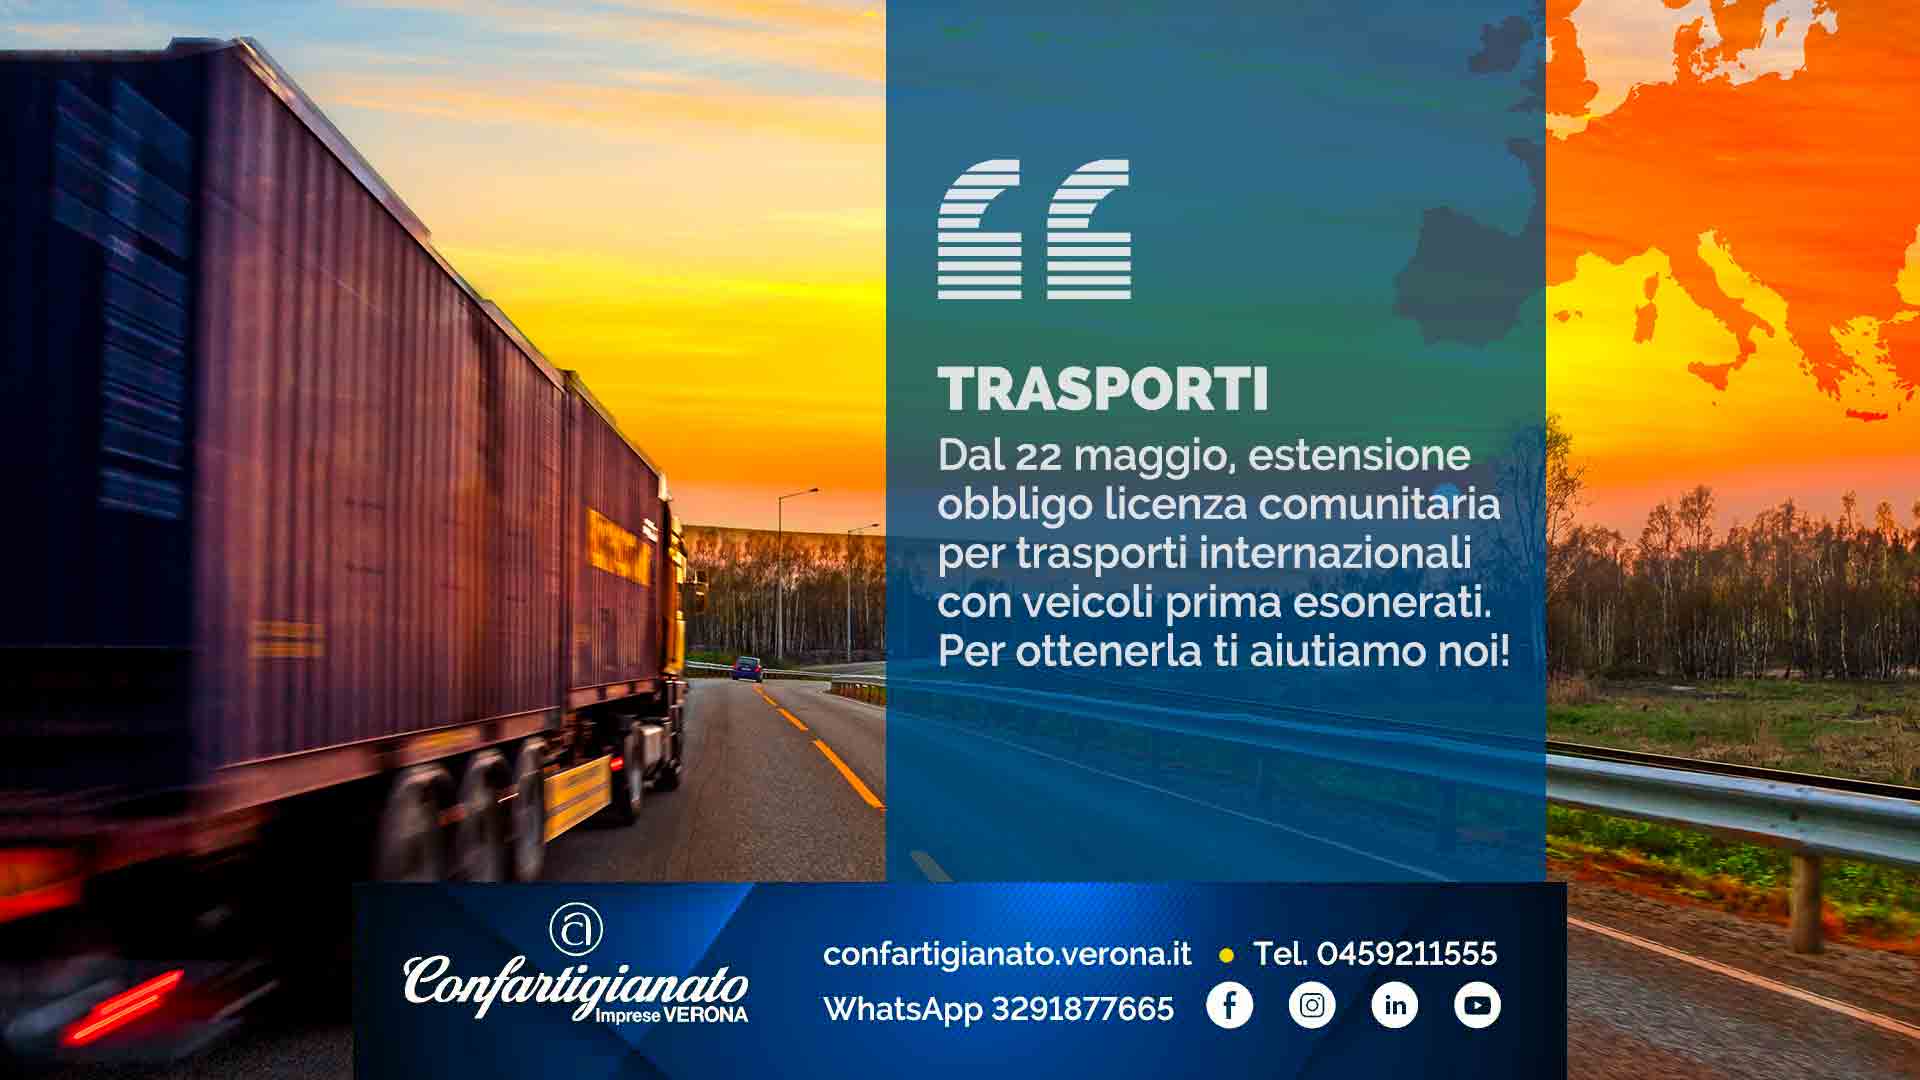 TRASPORTI – Dal 22 maggio, estensione obbligo licenza comunitaria per trasporti internazionali con veicoli prima esonerati. Per ottenerla ti aiutiamo noi!